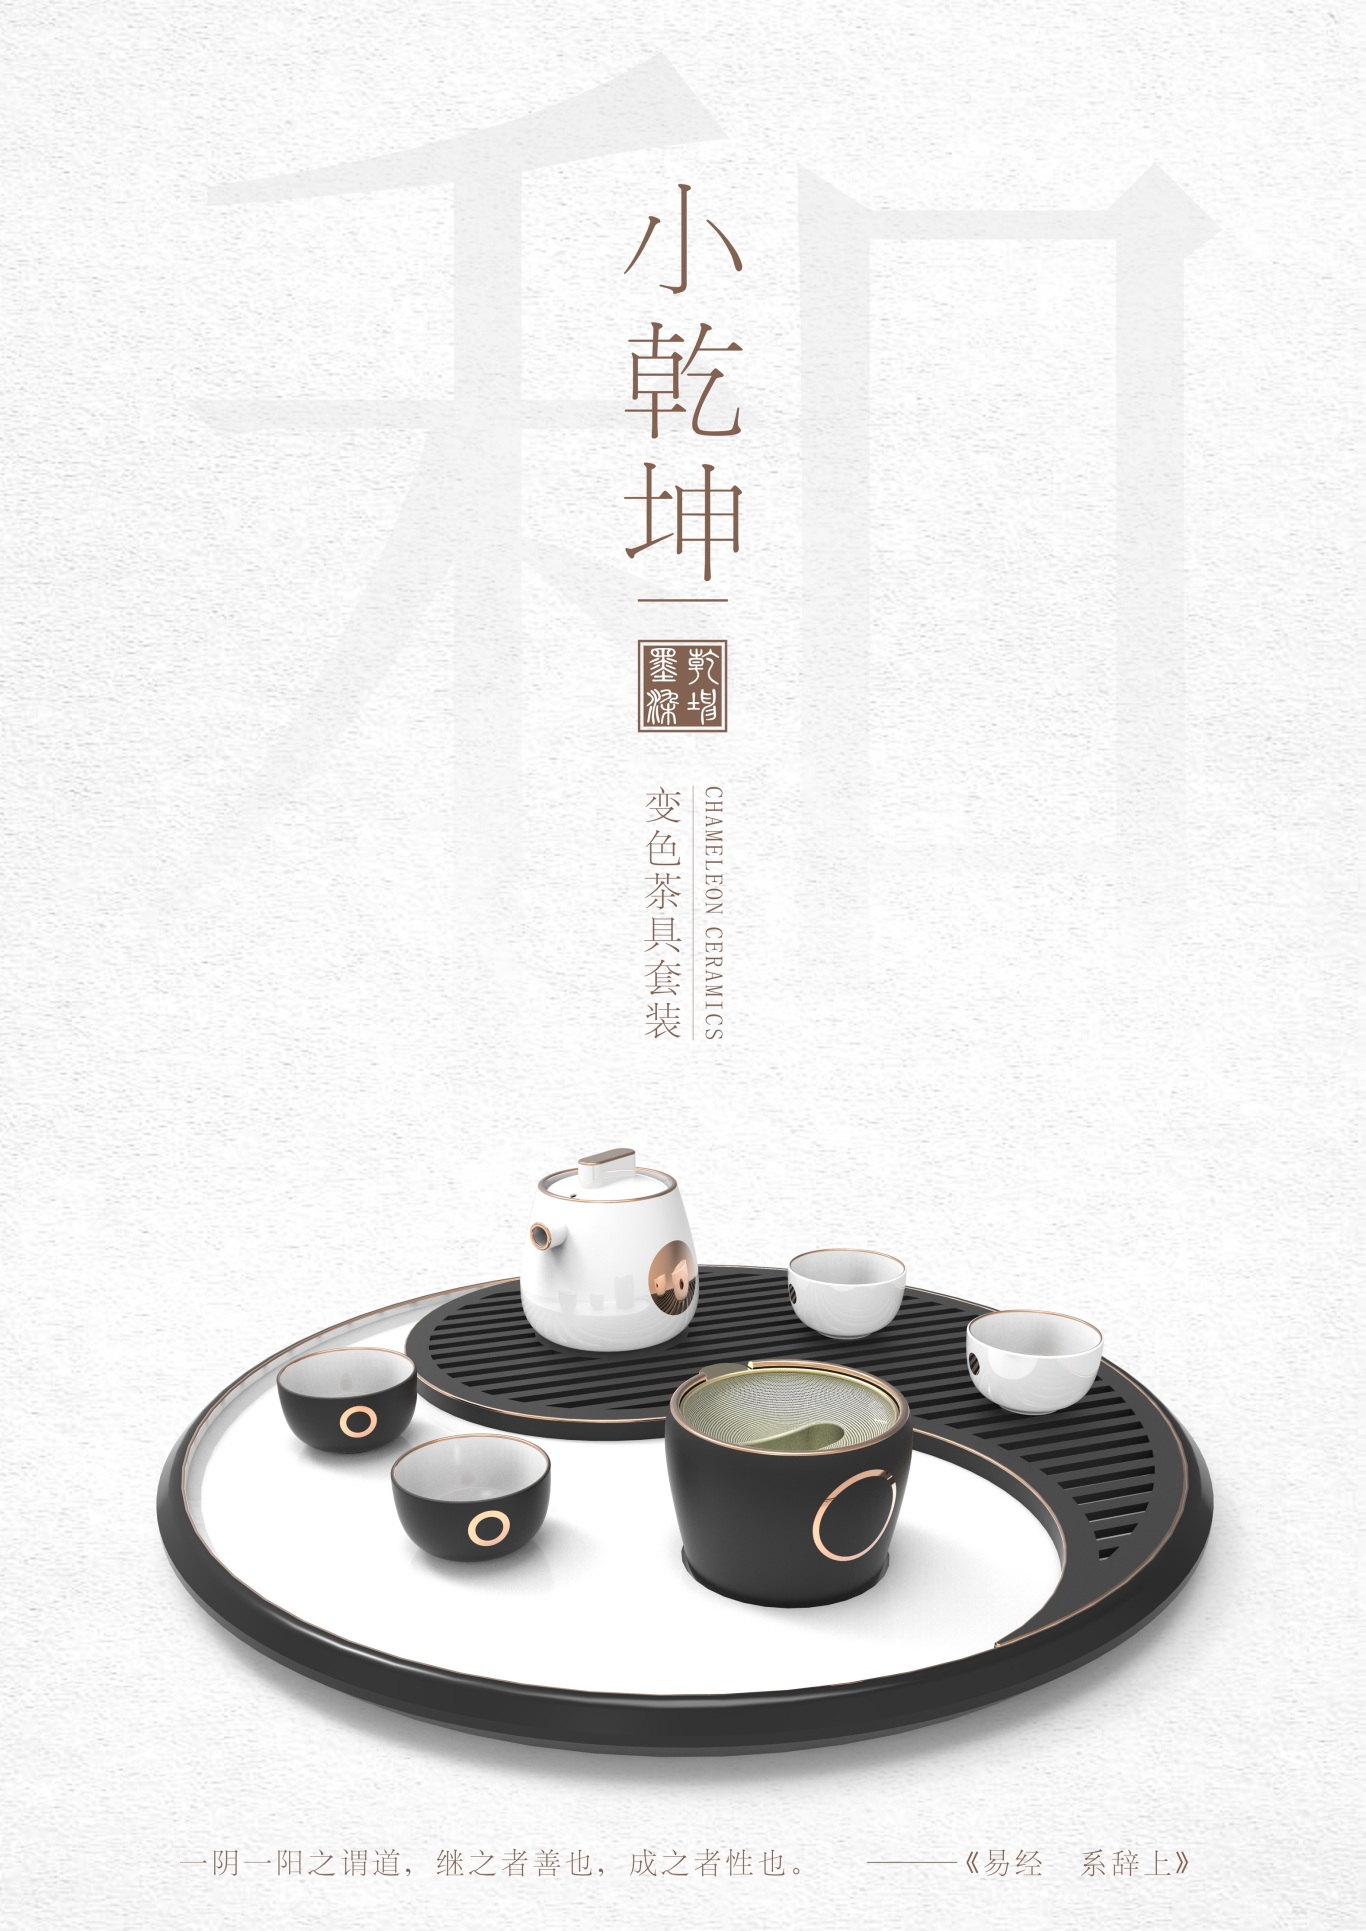 小乾坤-系列茶具設計圖2